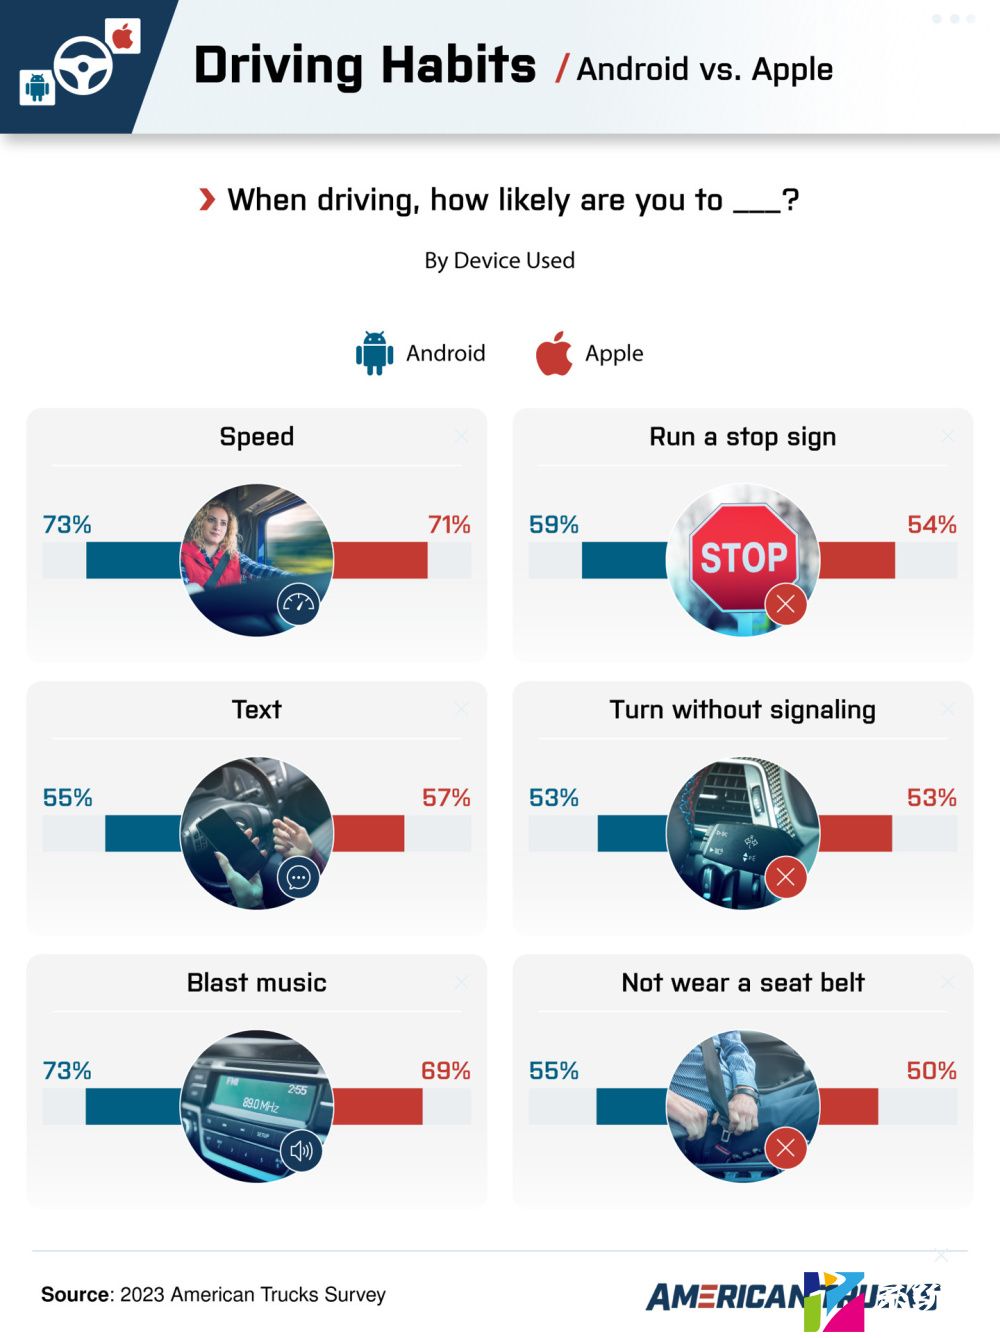 调查显示使用 iPhone 的司机比使用安卓手机的更容易出现路怒症